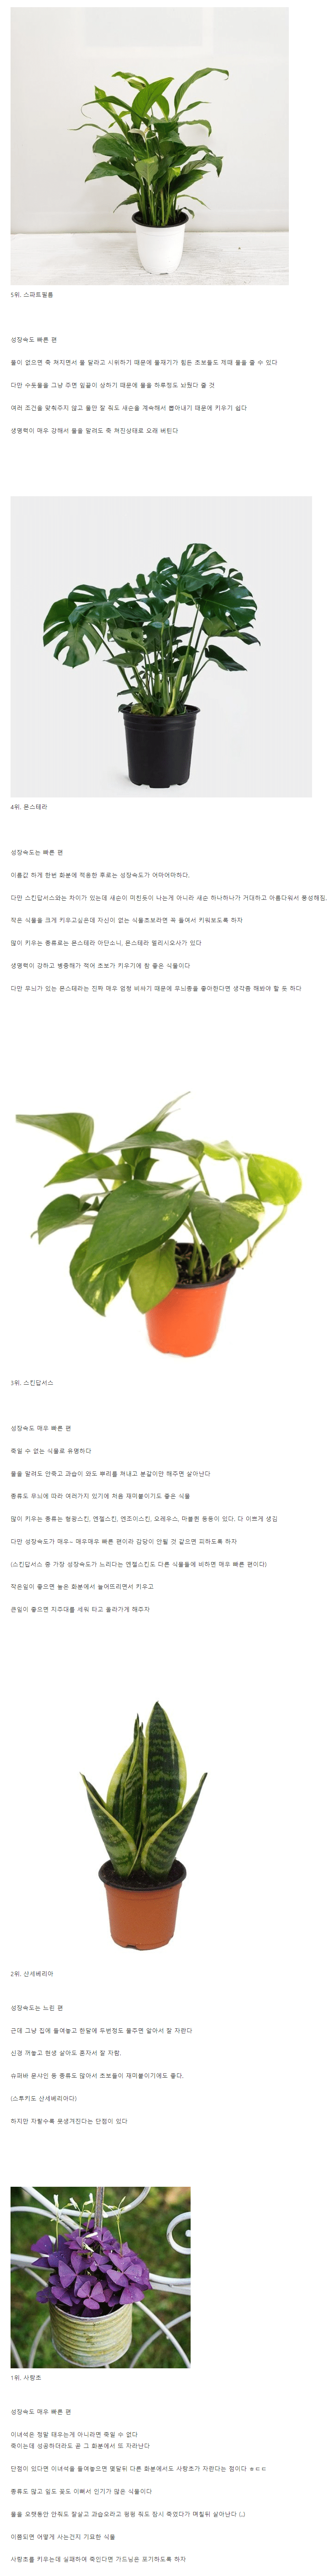 식물 초보 추천, 죽일래야 죽일 수 없는 식물 TOP 5 .jpg